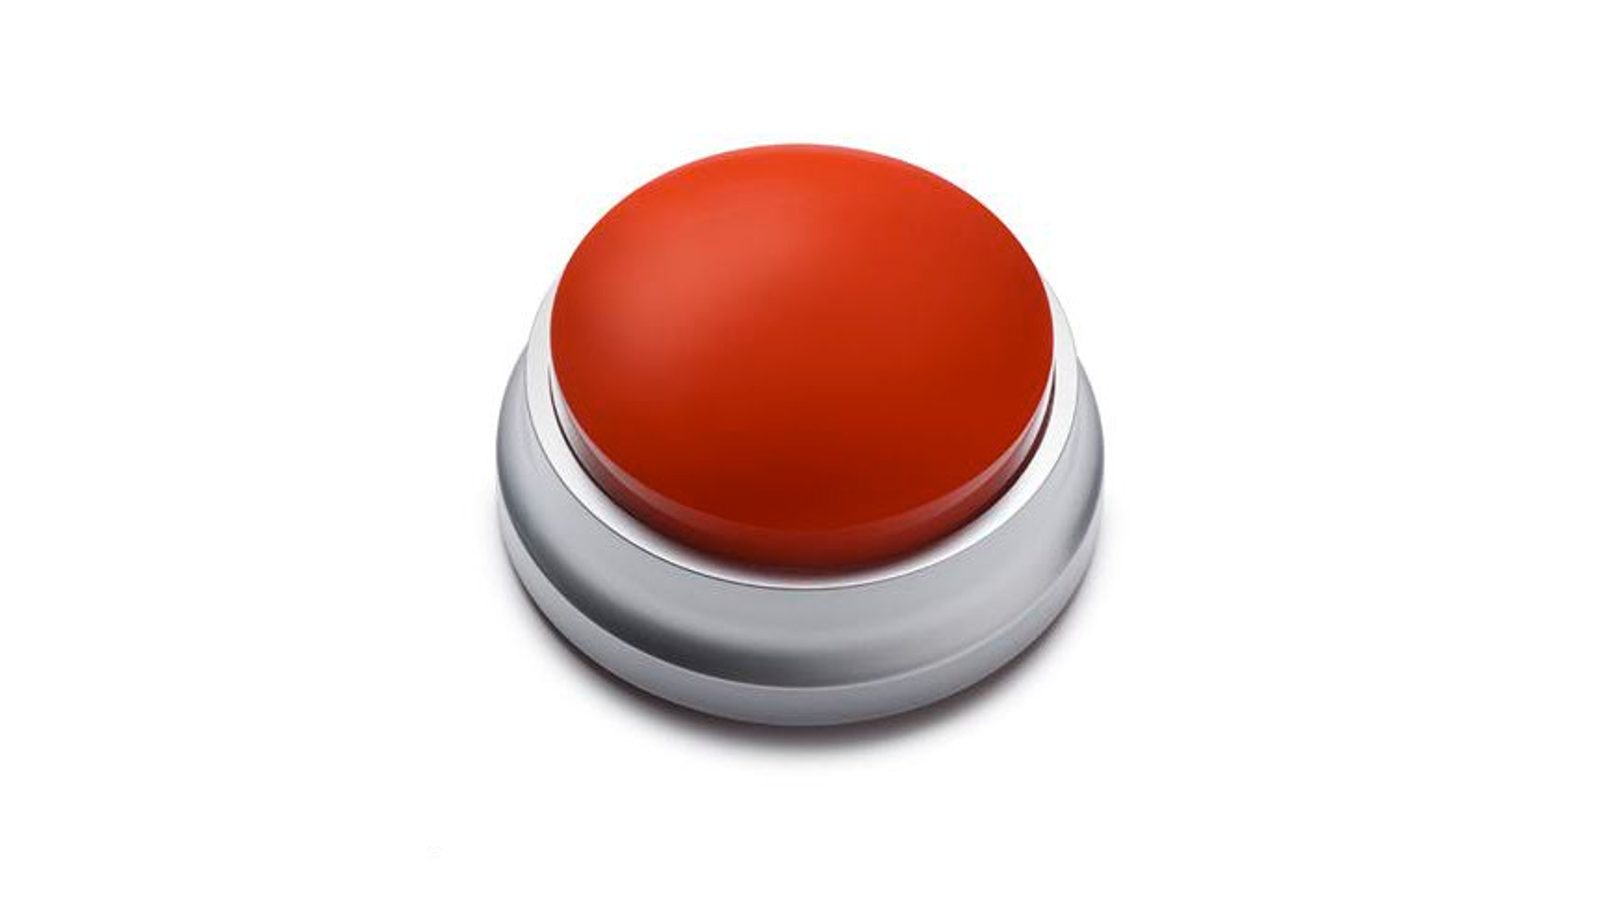 Нажми техно. Красная кнопка. Красная тревожная кнопка. Красная кнопка на прозрачном фоне. Выключатель с красной кнопкой.